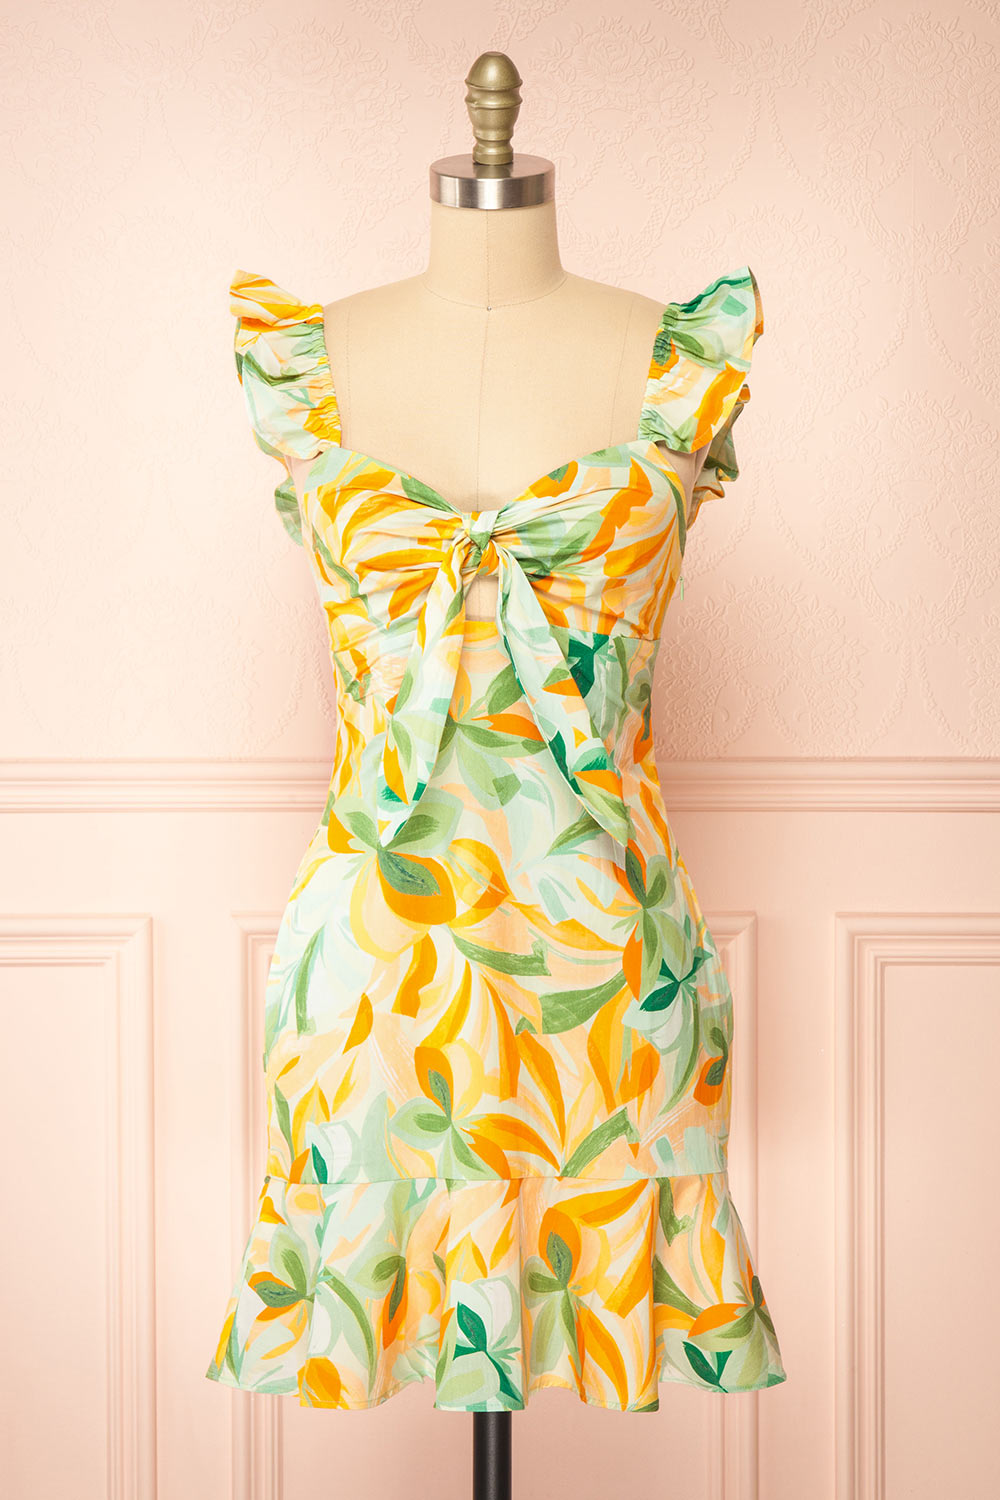 Dolabella Short Colourful Dress w/ Leaves Motif | Boutique 1861 front view